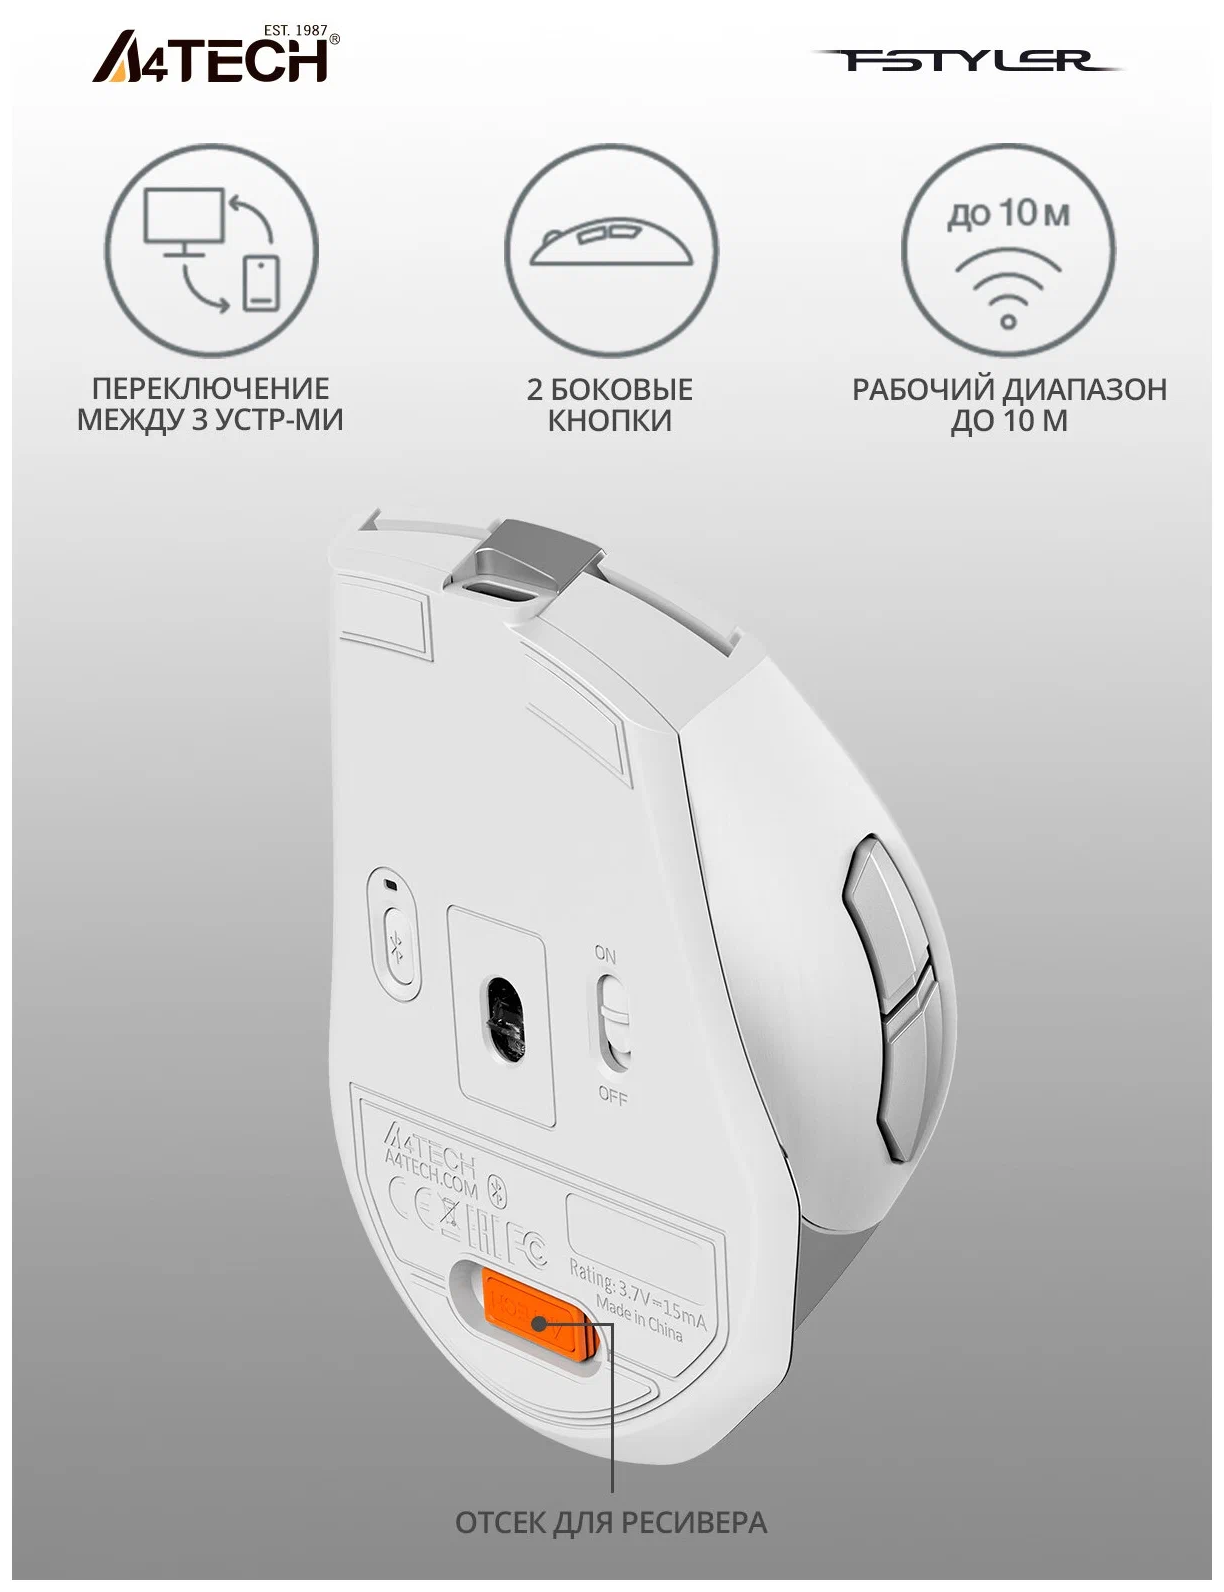 Мышь A4TECH Fstyler FB35C, оптическая, беспроводная, USB, белый [fb35c icy white] - фото №2